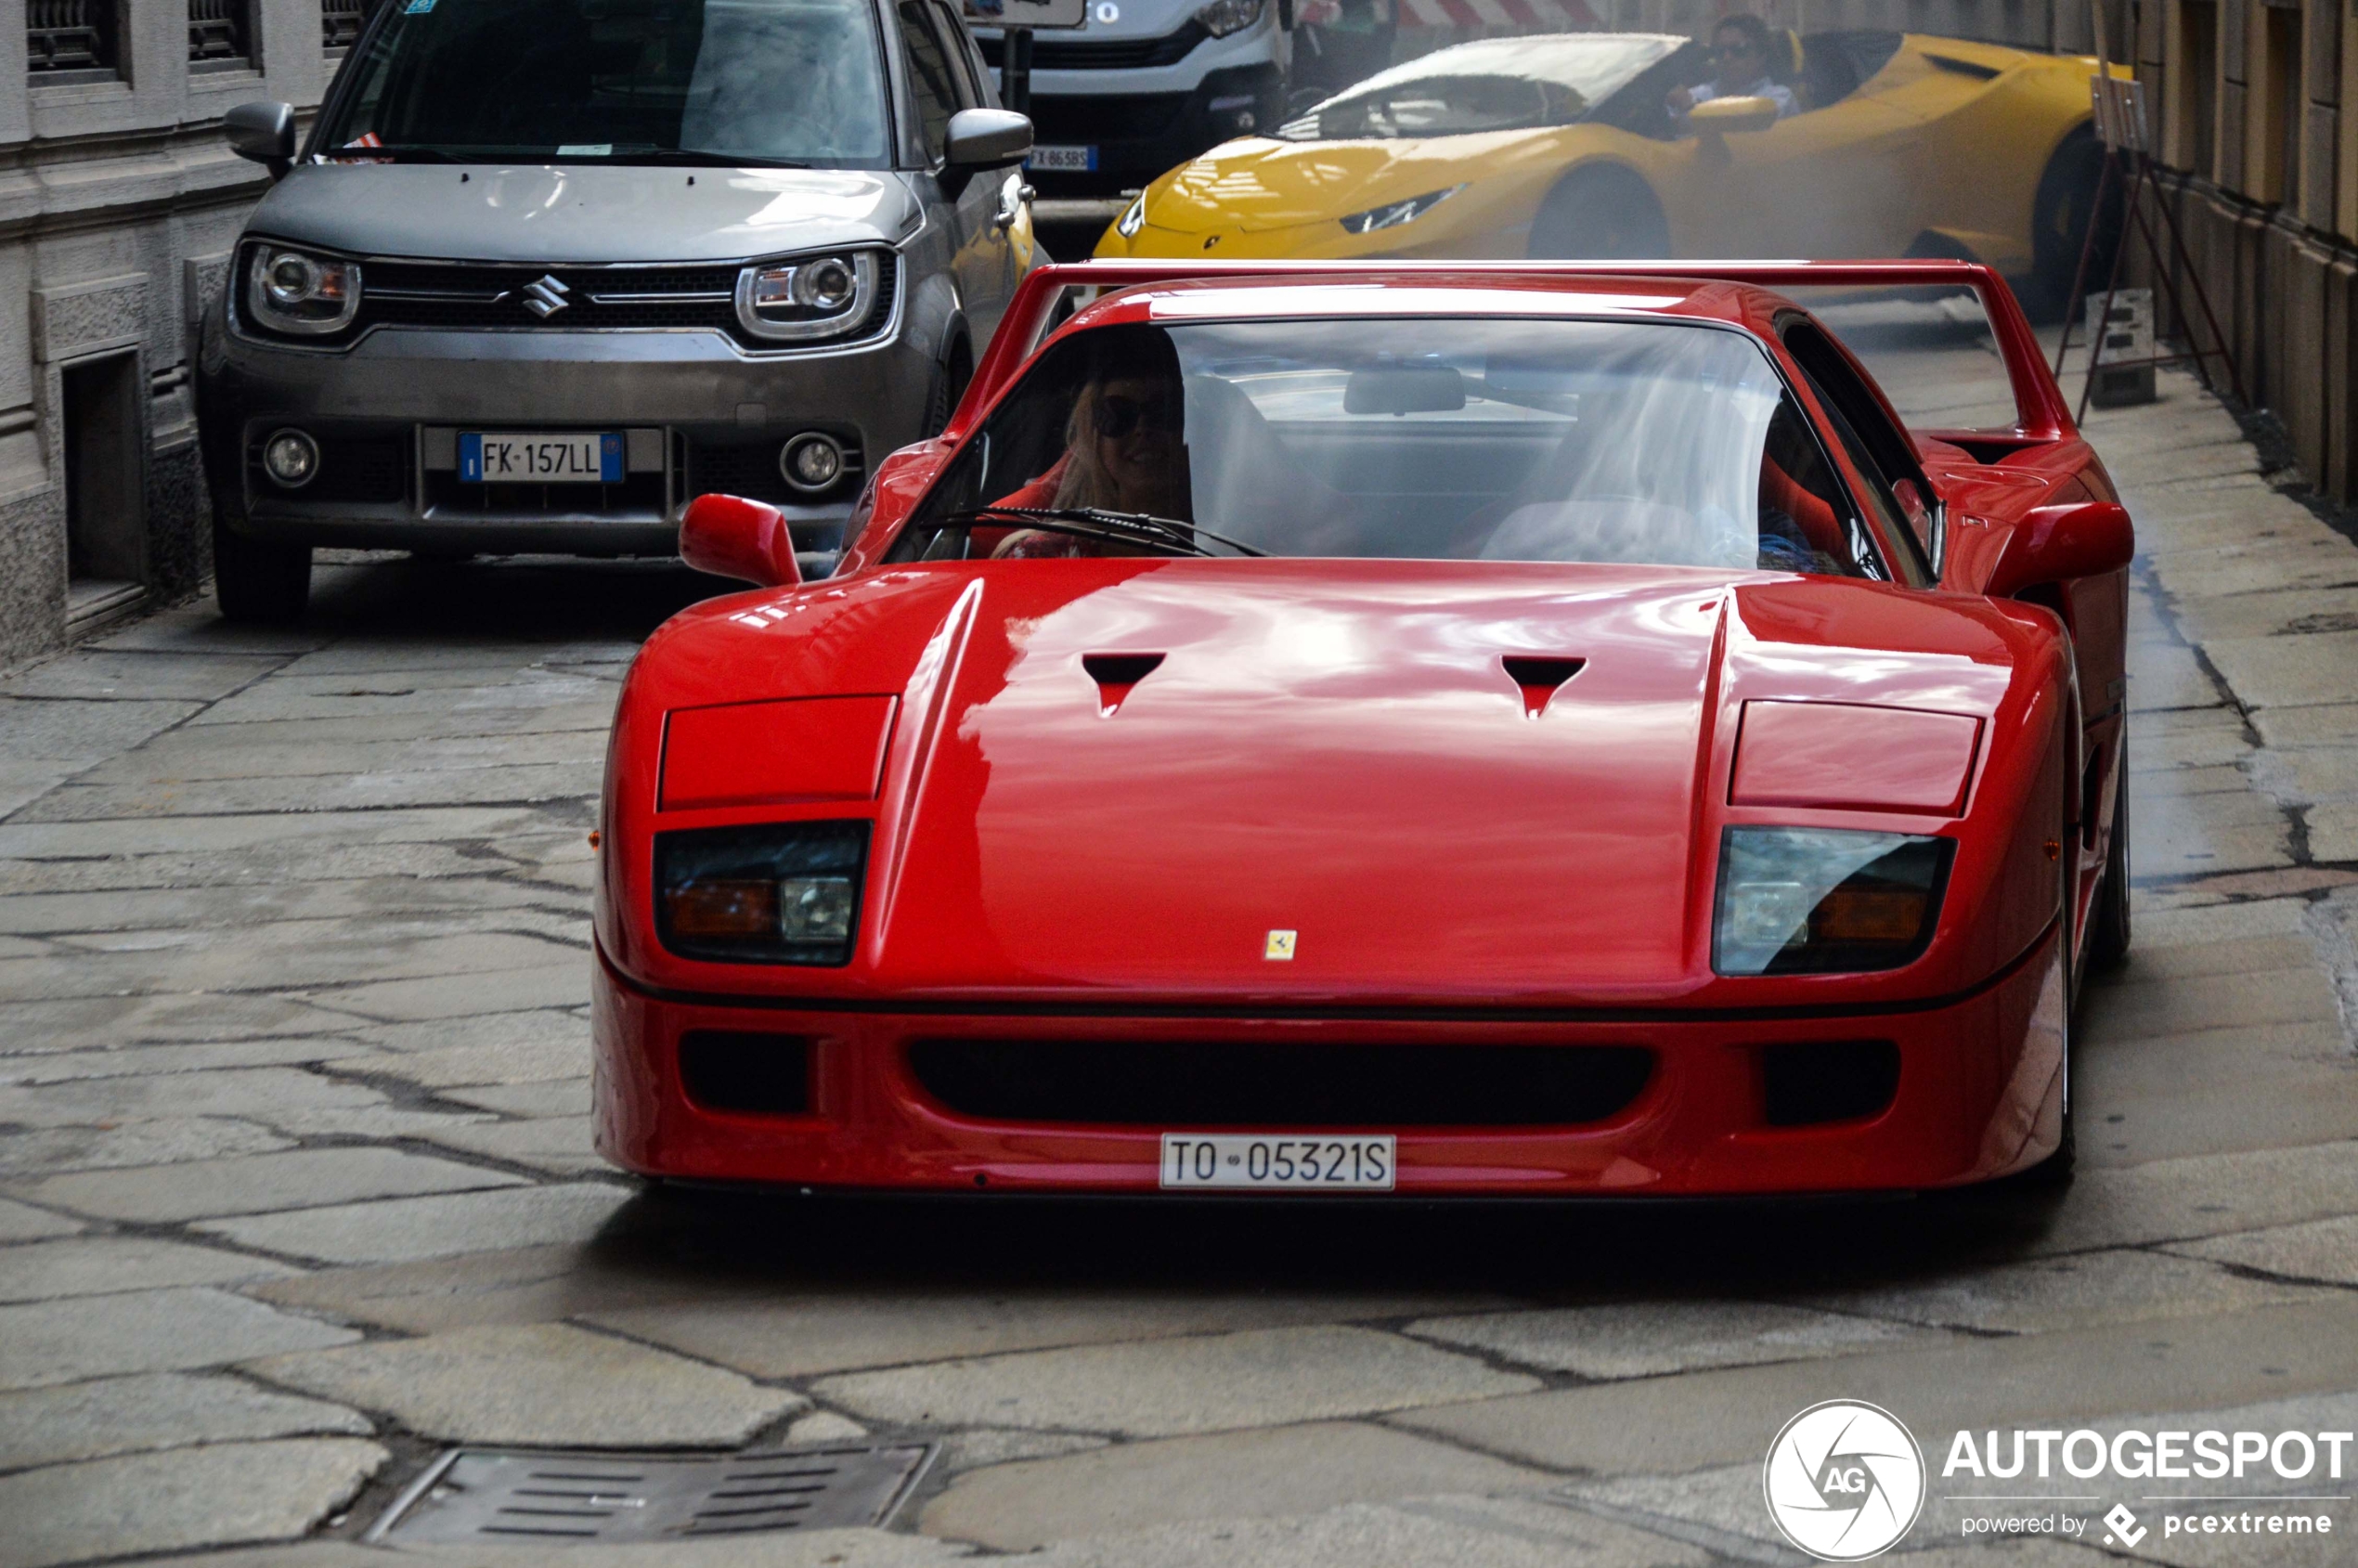 Ferrari F40 zet straten van Milaan blauw